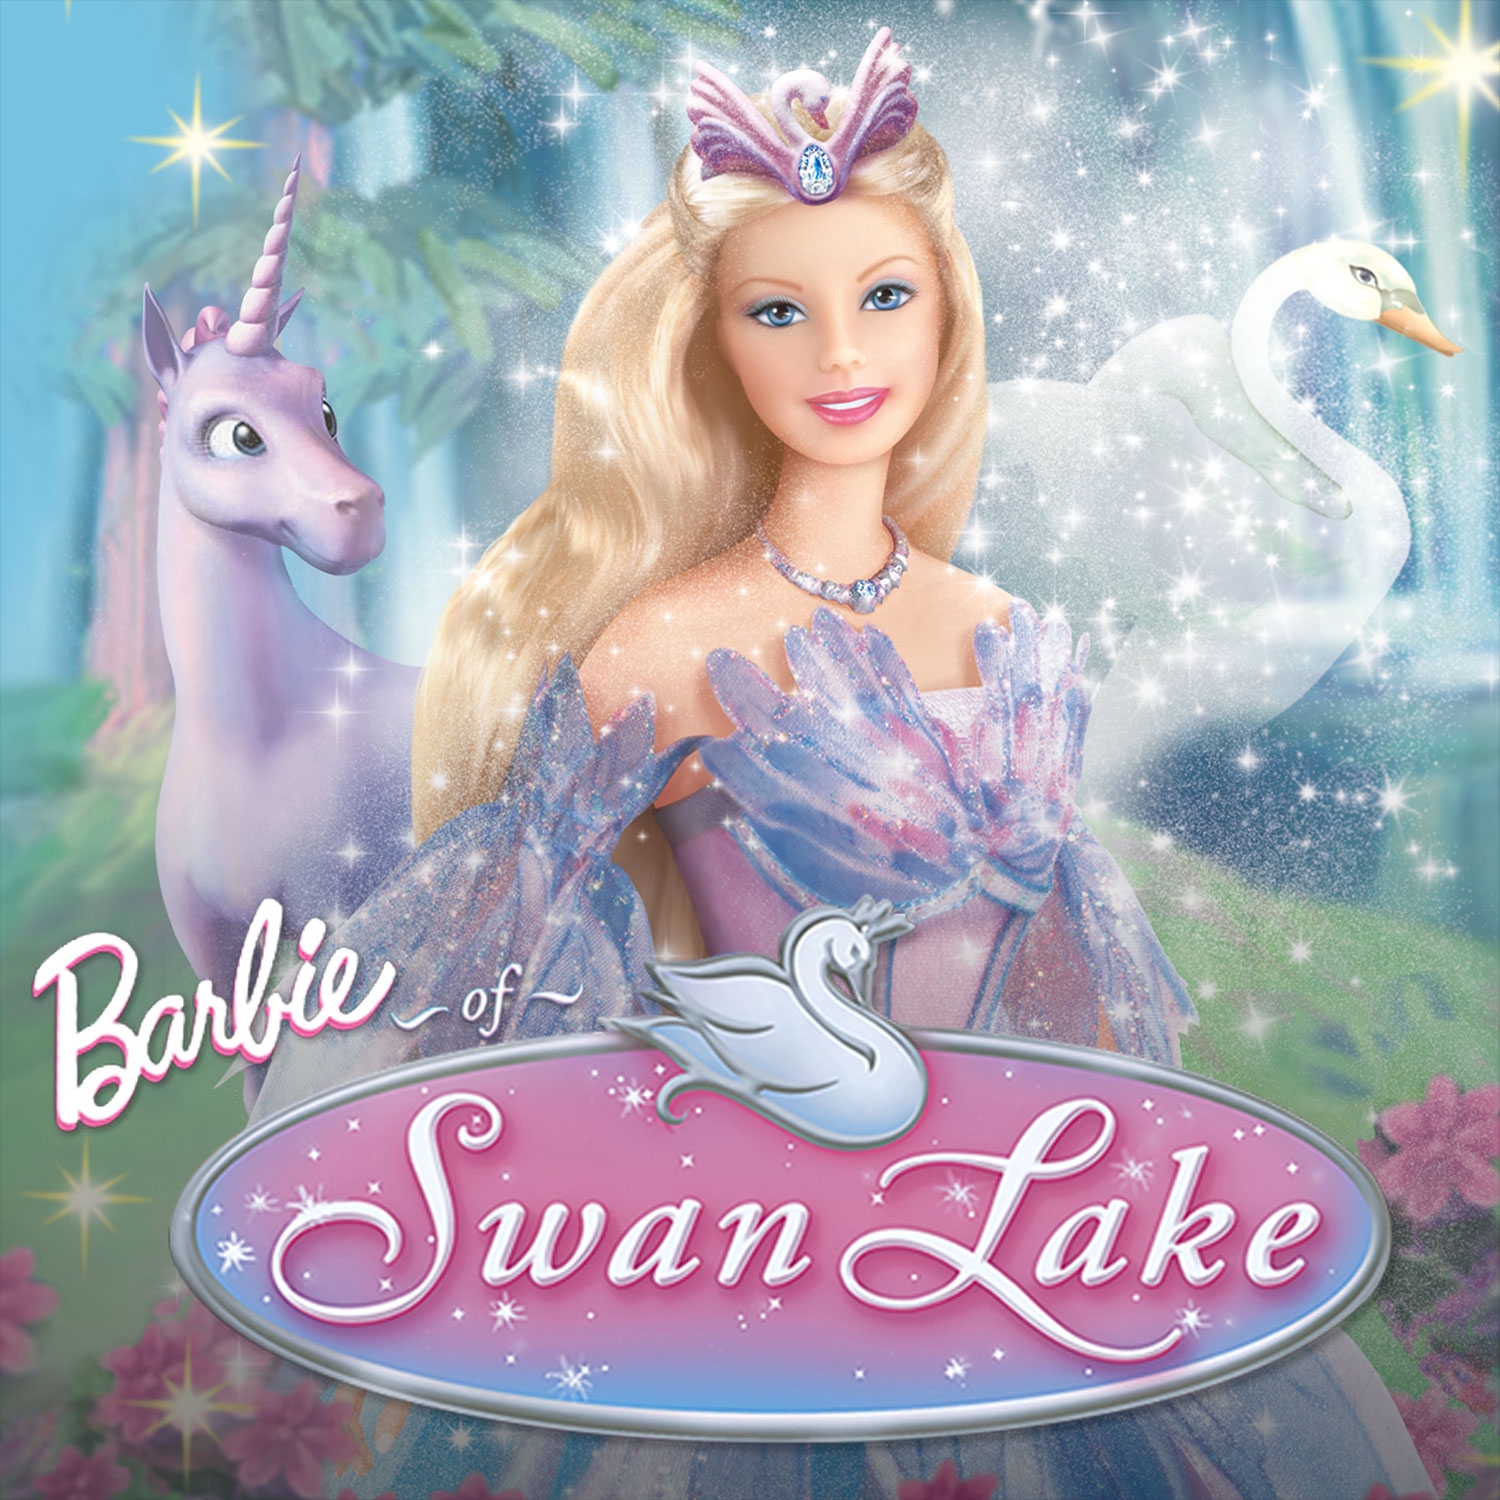 Barbie Of Swan Lake Wallpapers - Wallpaper Cave